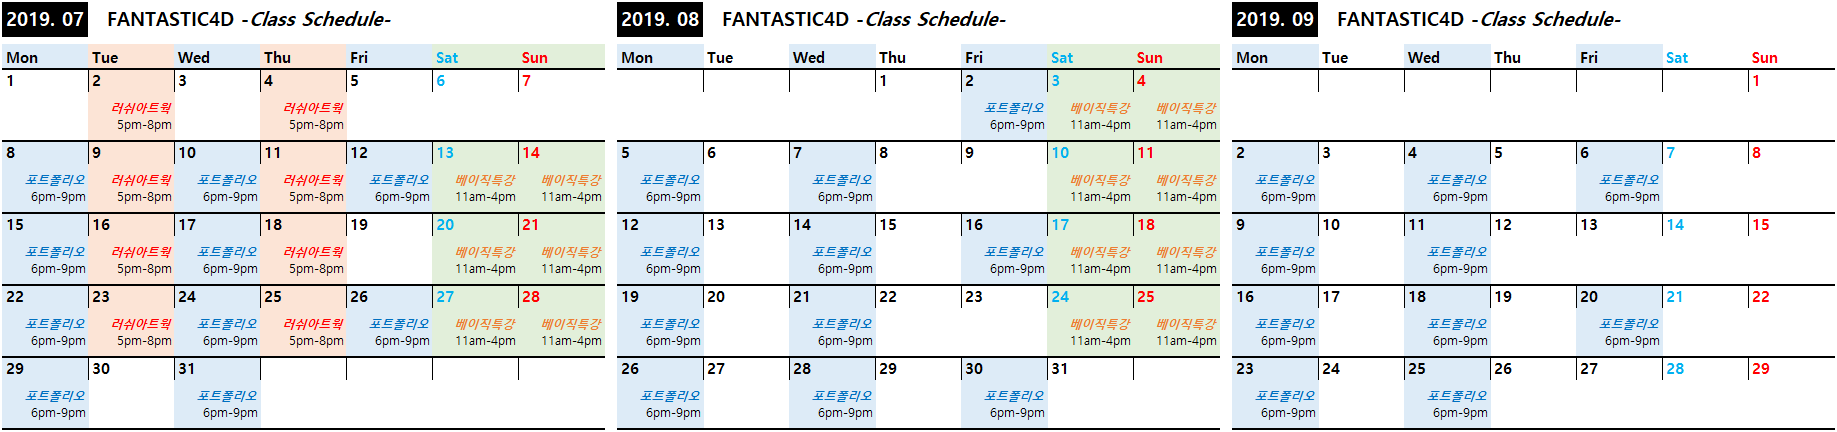 FTST4D_Class Schedule_2019-07-08-09.png